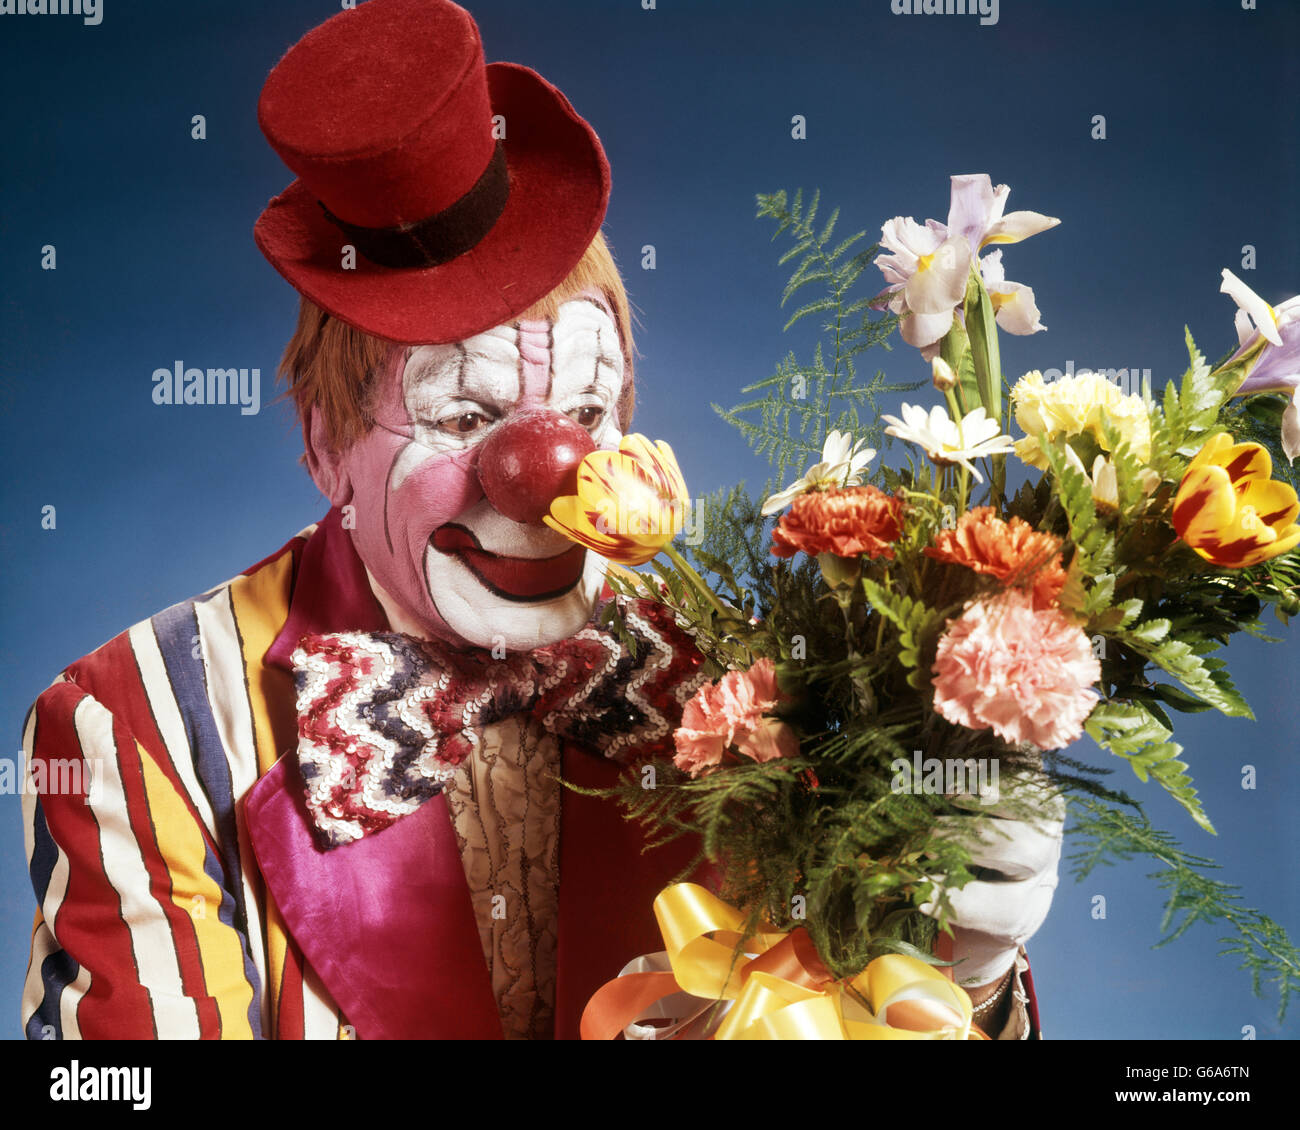 1970 PORTRAIT HAPPY clown de cirque portant chapeau rouge minuscule costume rayé noeud papillon grand bouquet de fleurs odorantes Banque D'Images